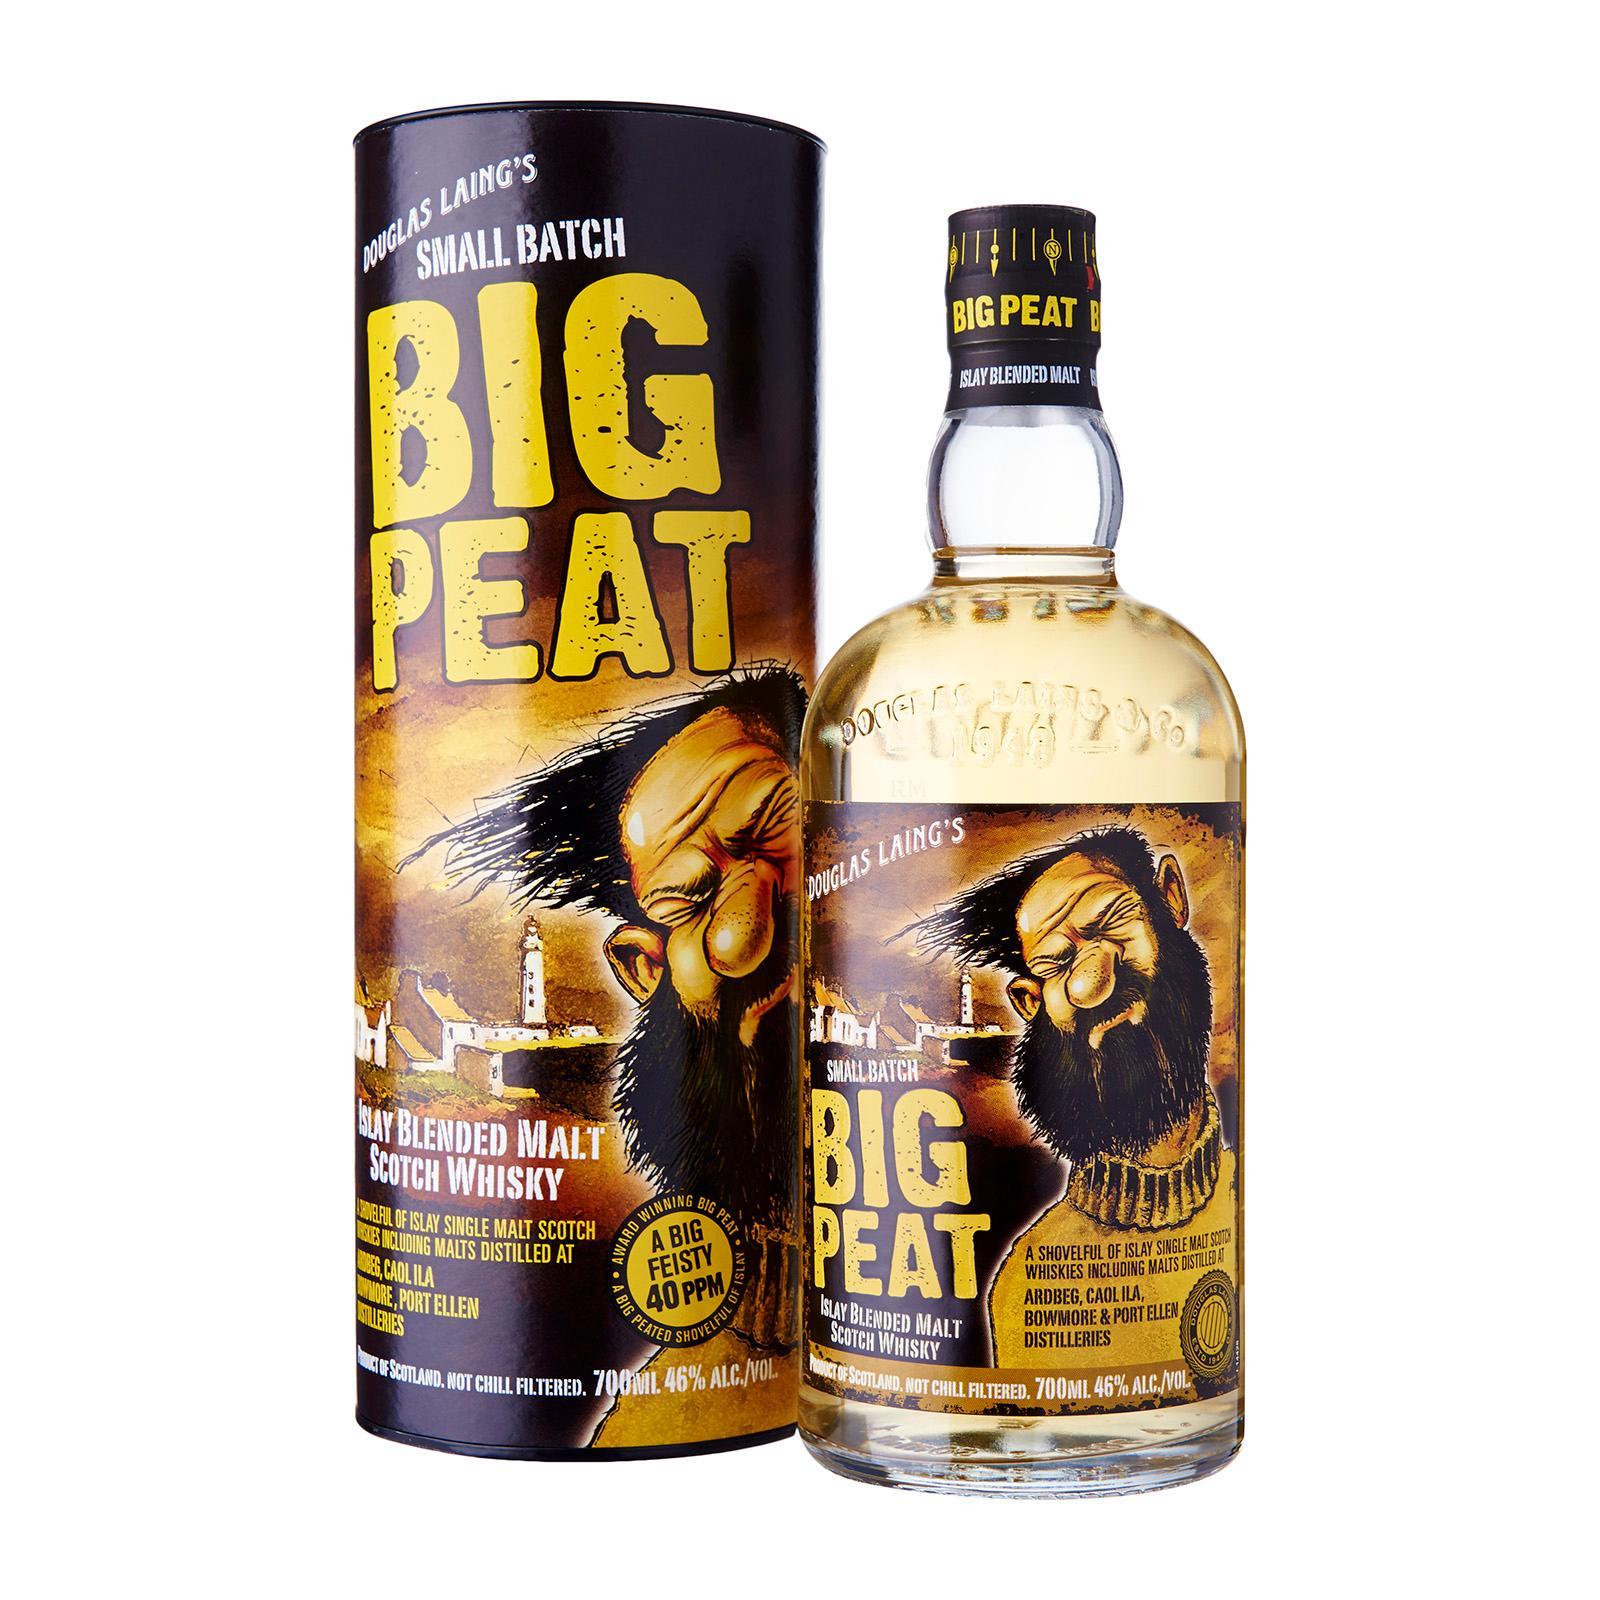 Big Peat Islay Malt Whisky – Islay Scotland